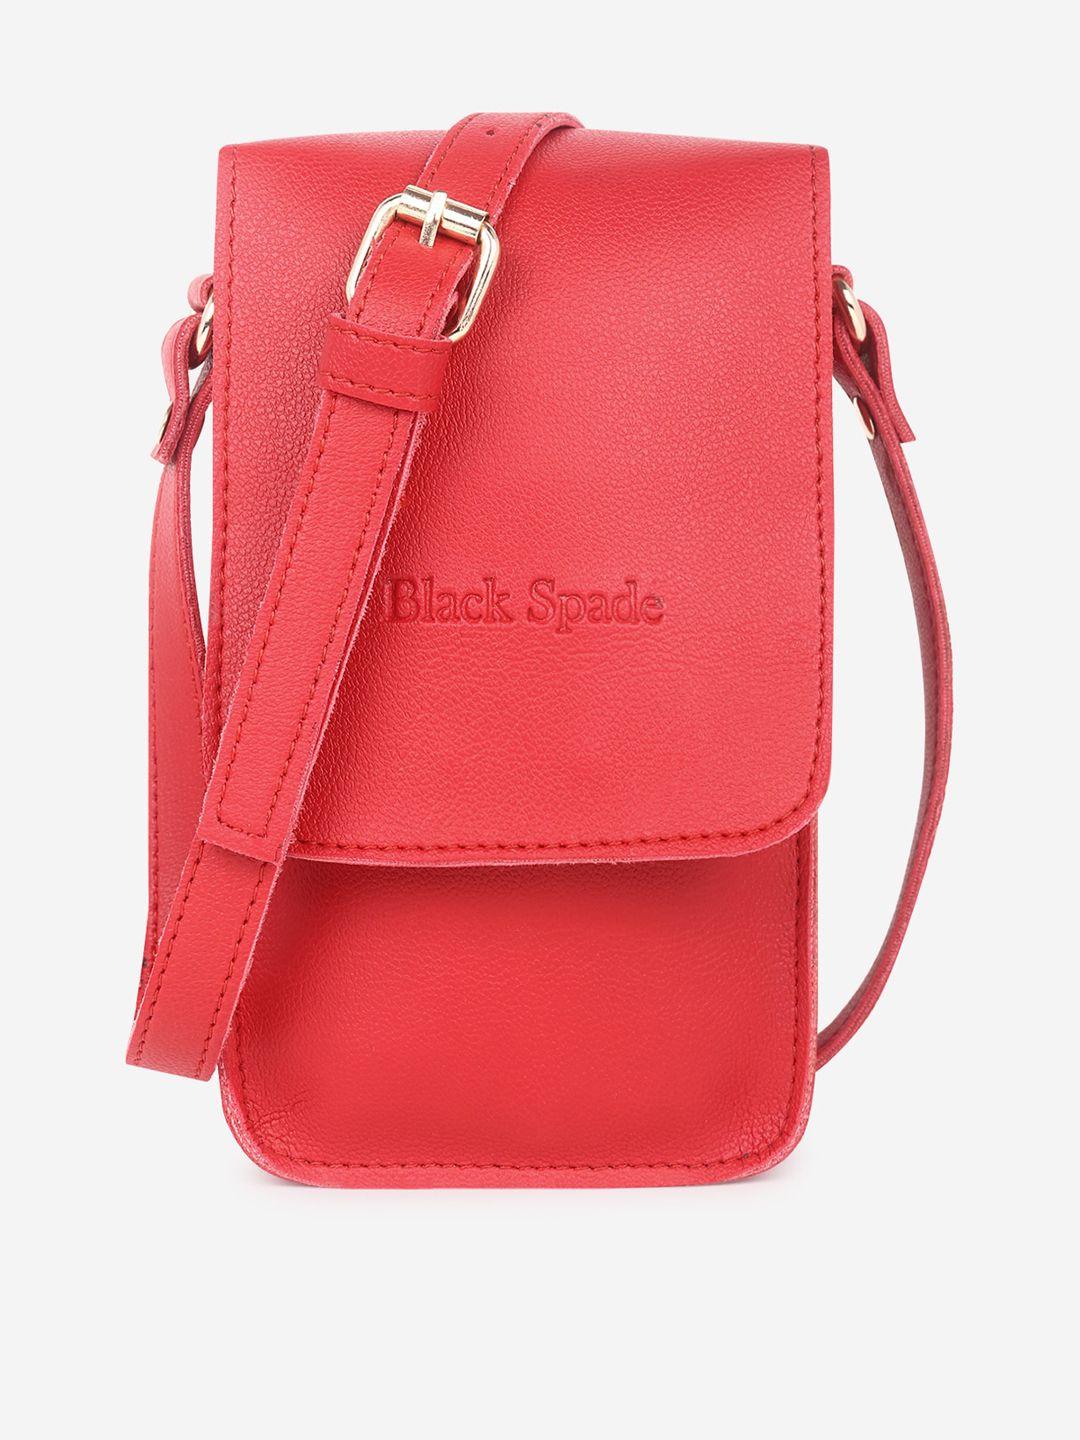 black spade red structured sling bag